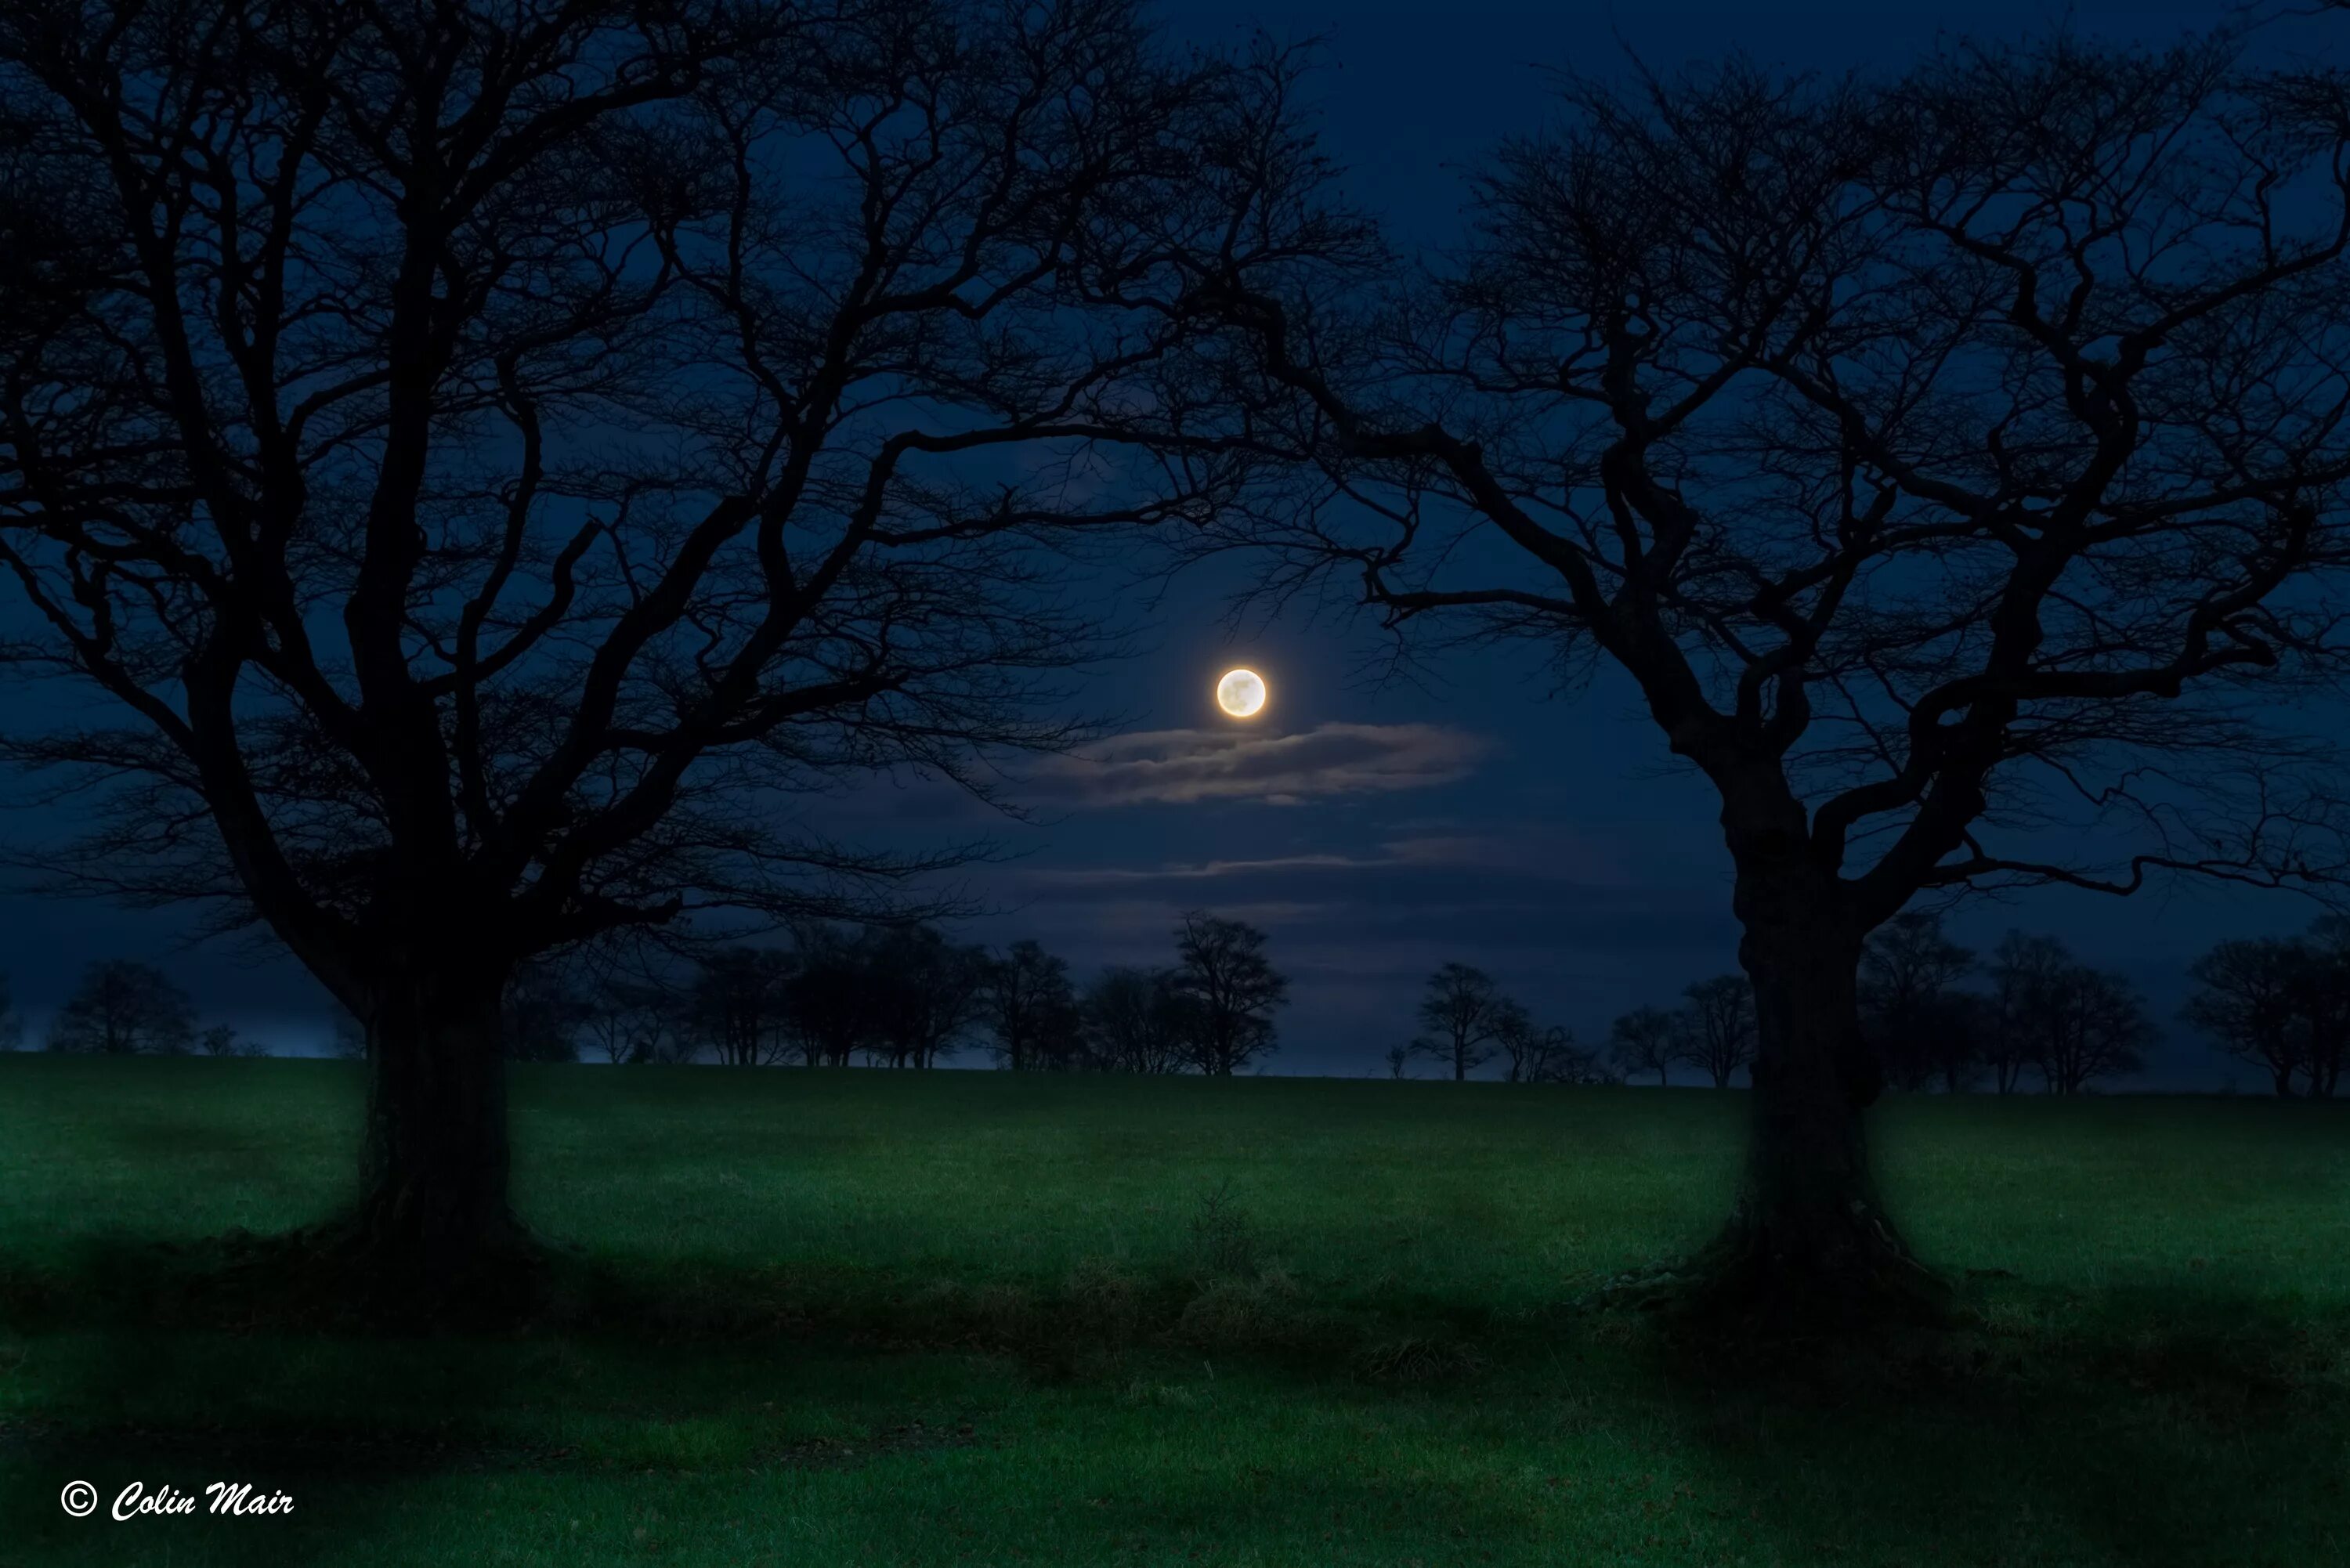 Дерево освещенное луной. Лес Освещенный луной. Деревья в свете Луны. Тёмный чпонский лес освещаюшей луно.